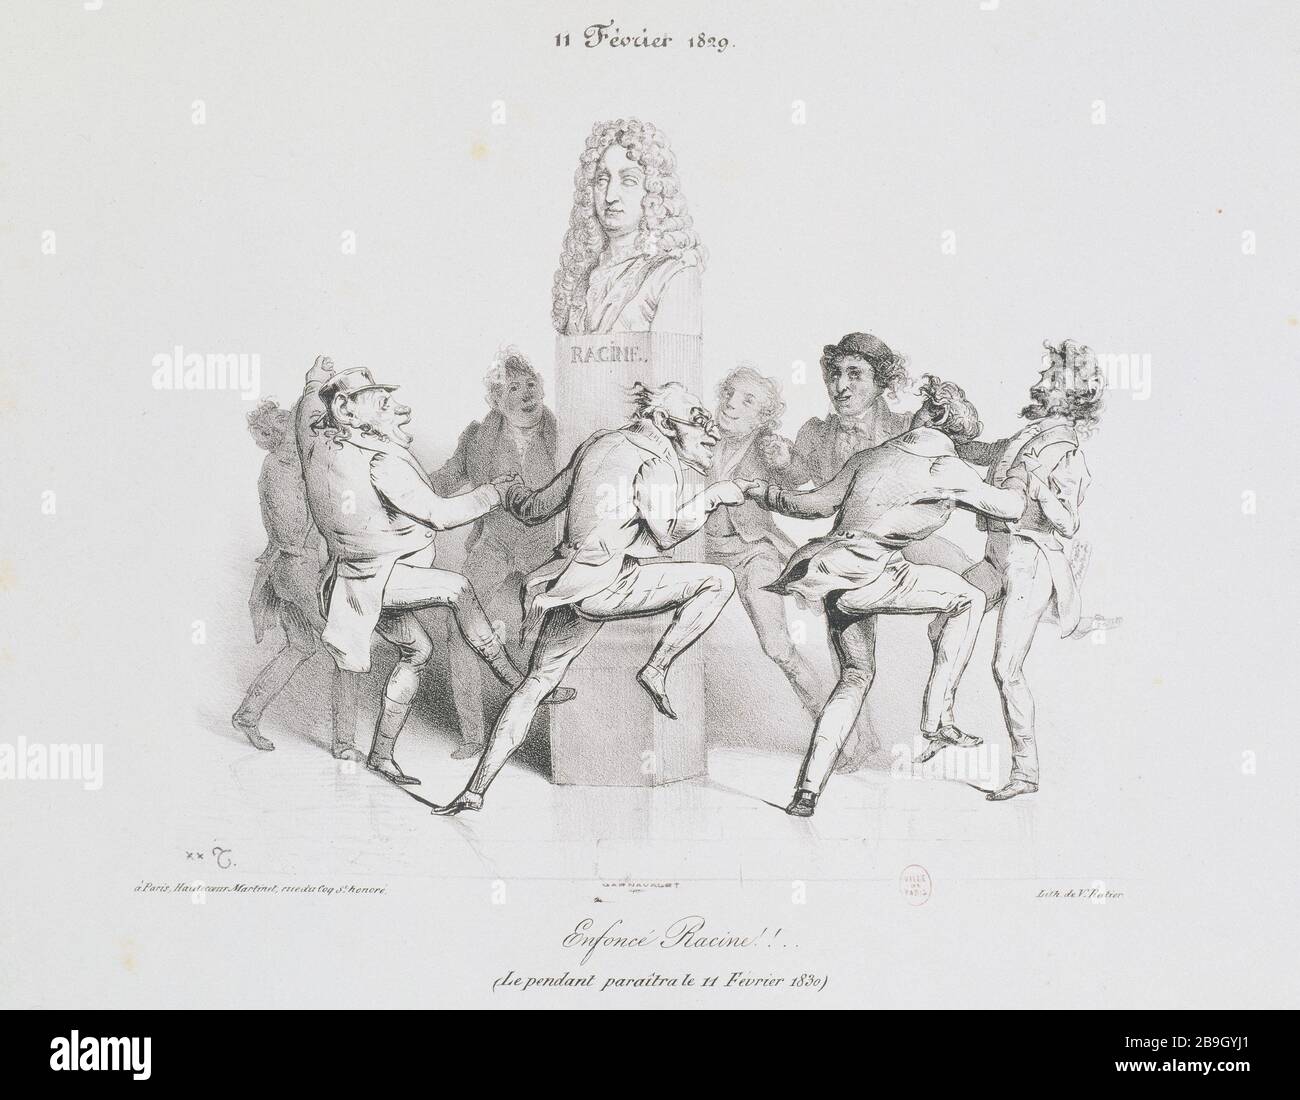 ENFONCE ROOT! Charles Joseph Traviès de Villiers (1804-1859). 'Enfoncé Racine ! 11 Février 1829'. Gravure. Paris, musée Carnavalet. Stock Photo